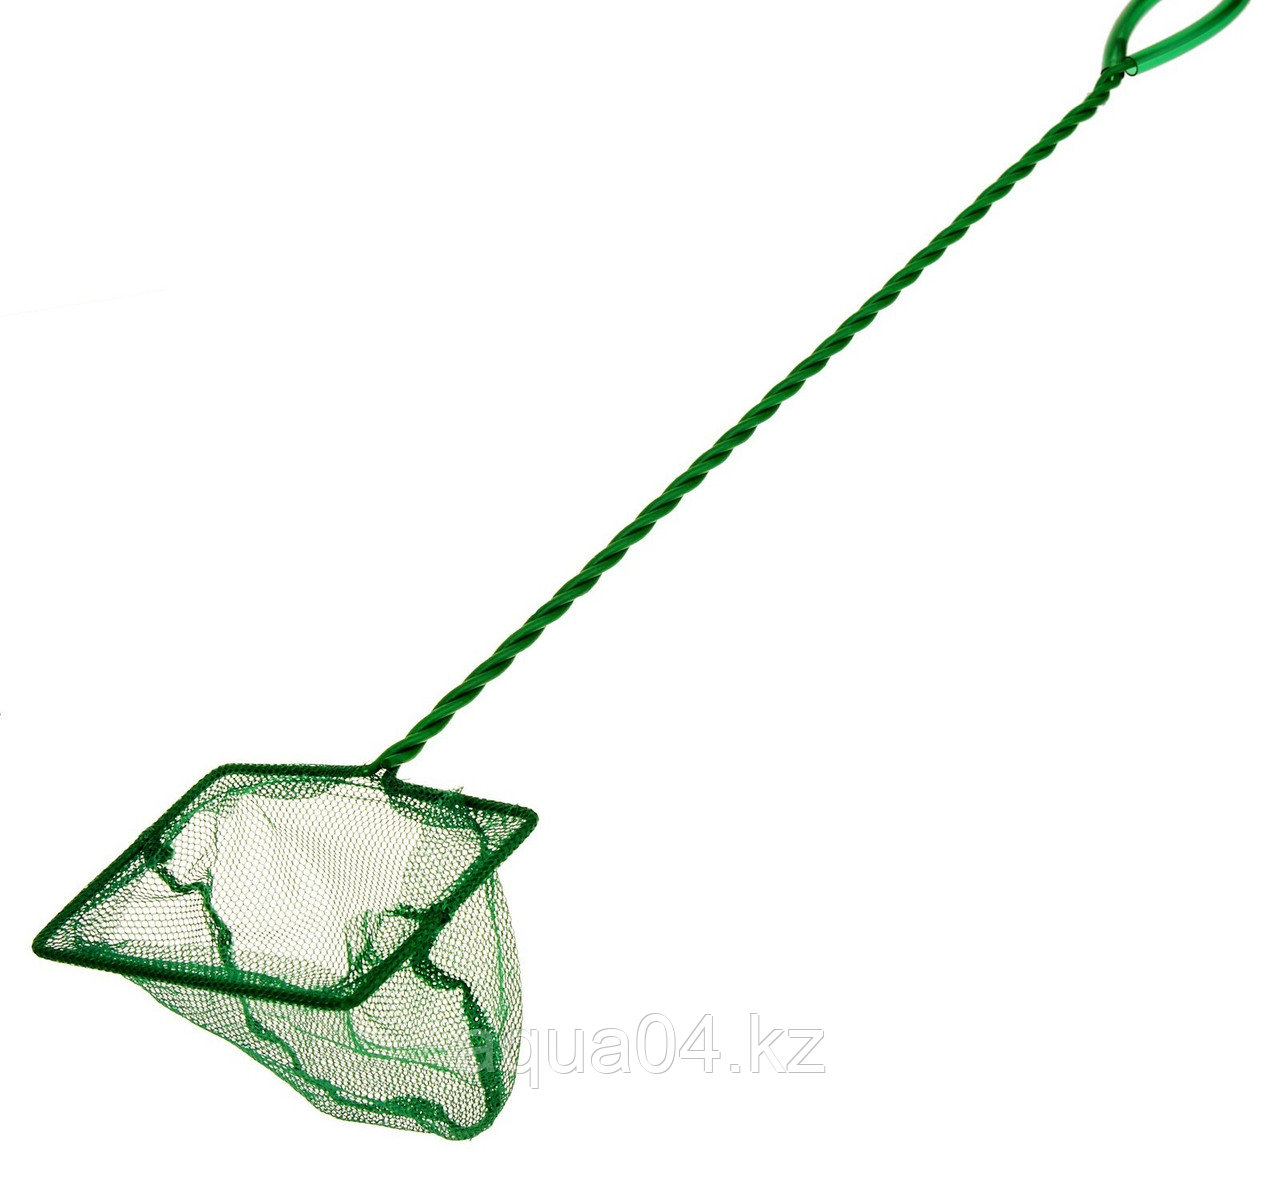 Сачок 4" Long Net Green  (10 см.) с длинной ручкой 